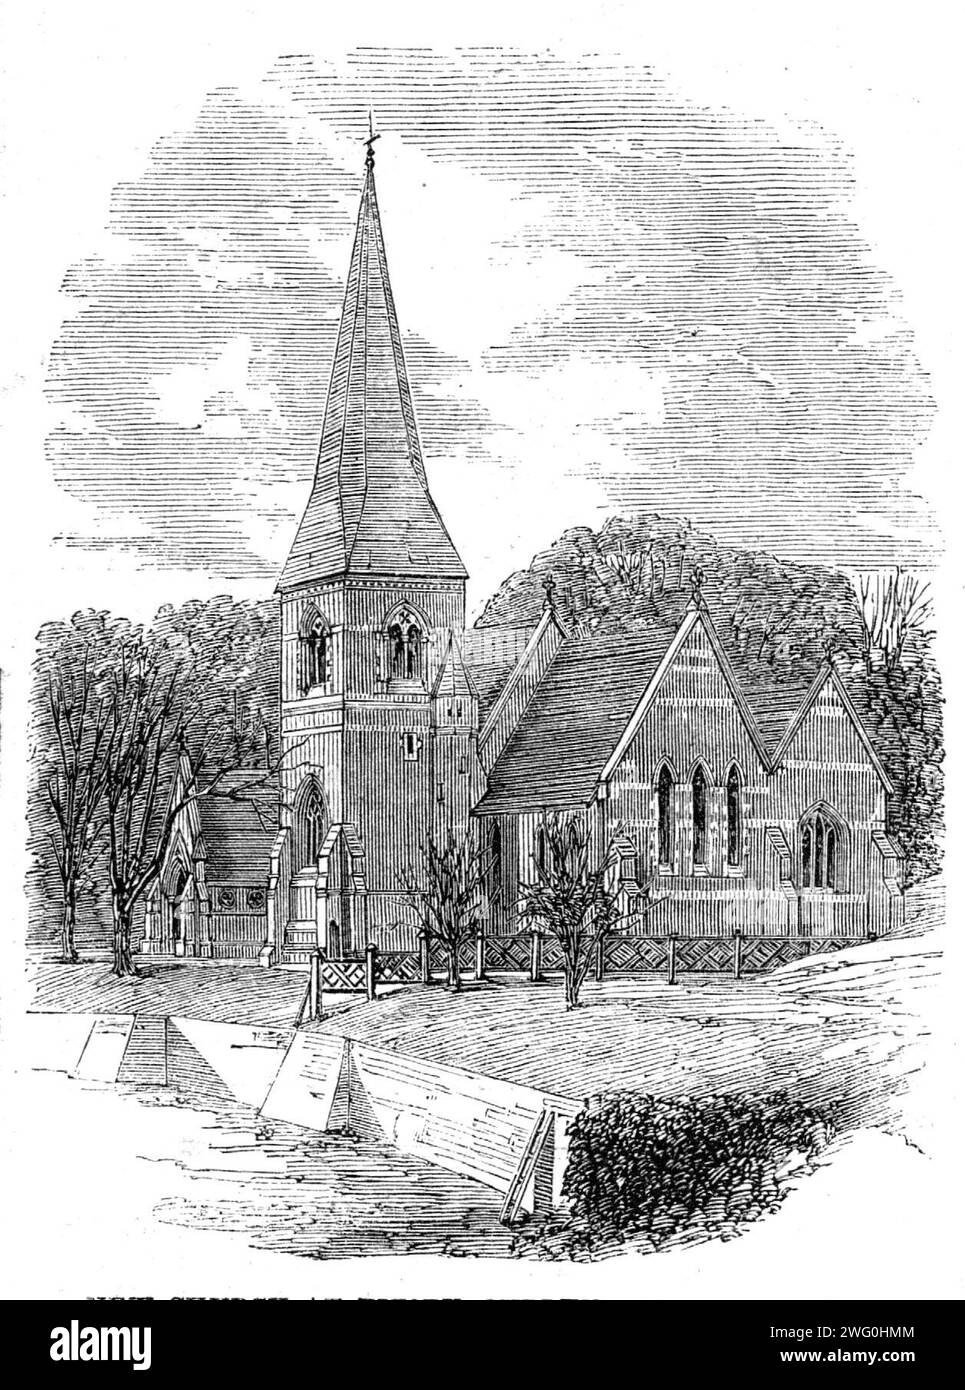 Neue Kirche in Titsey, Surrey, 1862. Die wunderschöne Kirche, die kürzlich in Titsey, Surrey, von Granville Leveson Gower, Esq, im Titsey Park errichtet wurde, wurde an der Stelle der alten Kirche gebaut, und aufgrund der Höhe des Turms und der Turmspitze (96 m) wird sie als Objekt von großer Schönheit aus dem ganzen umliegenden Land angesehen... die Kirche, deren Stil frühenglisch ist, umfasst das Kirchenschiff, den Chor, die seitliche Leichenkapelle und das Vlies, zusammen mit einem hübschen Turm, ca. 45 m. Hoch, überragt von einem Turm von etwa gleicher Höhe...die Wände sind aus Badstein; das Dach aus feinem, offenem Holz...Immedia Stockfoto